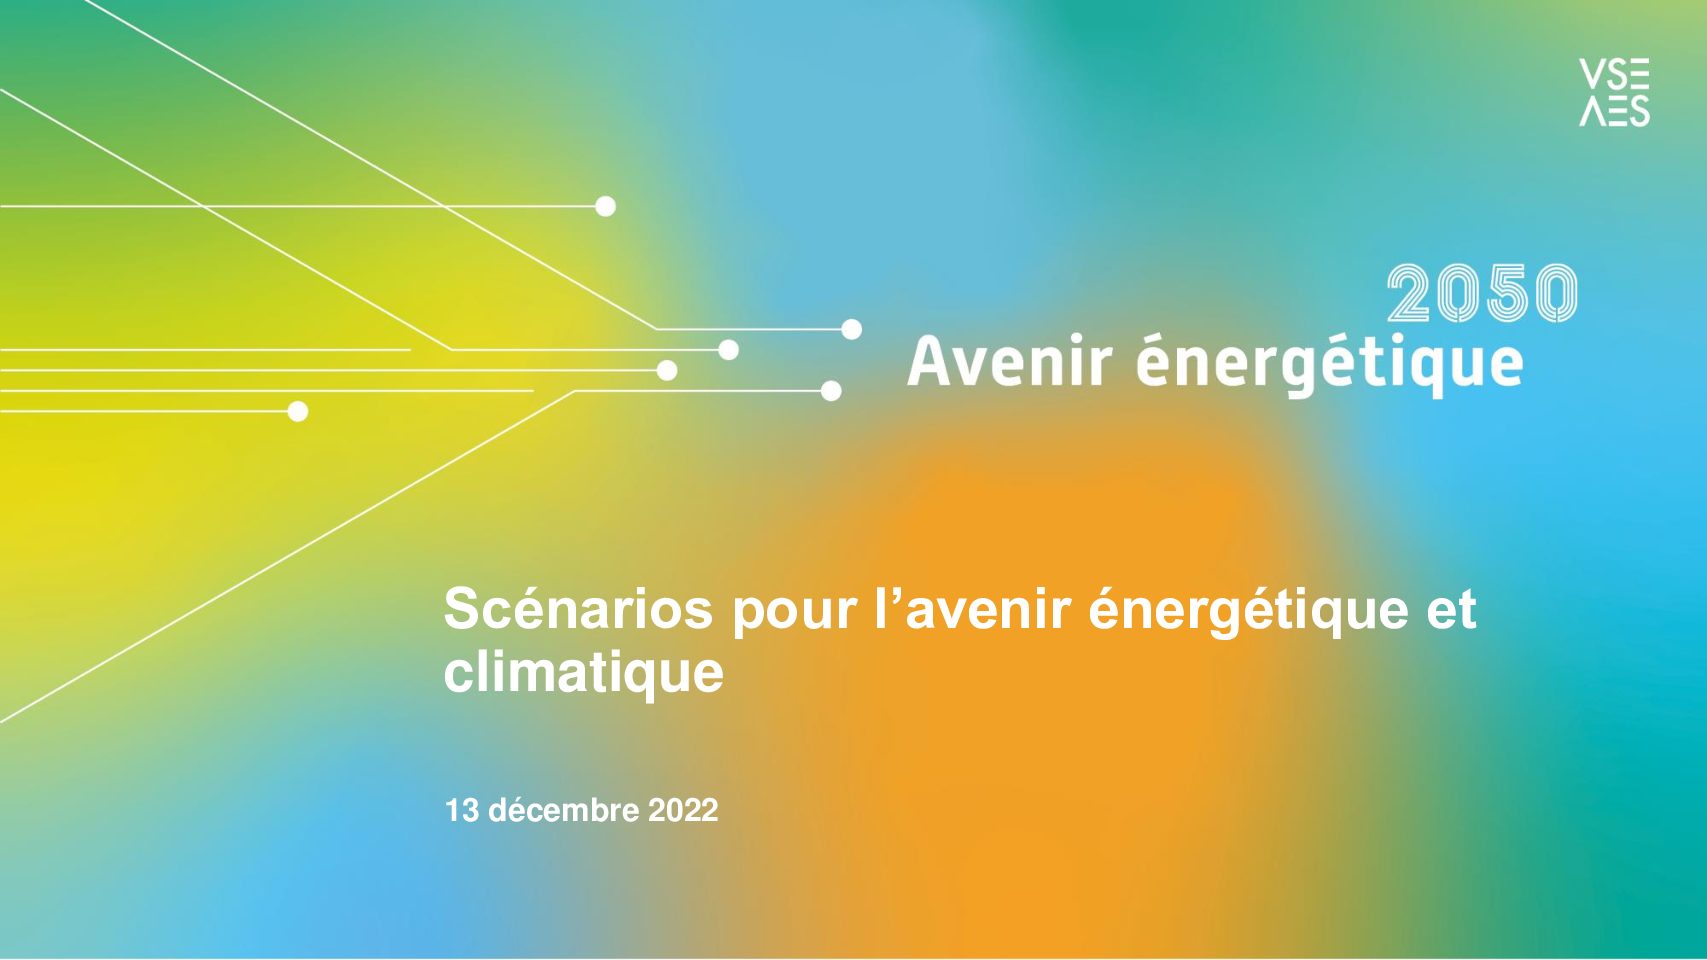 Avenir énergétique 2050 – Association des entreprises électriques suisses